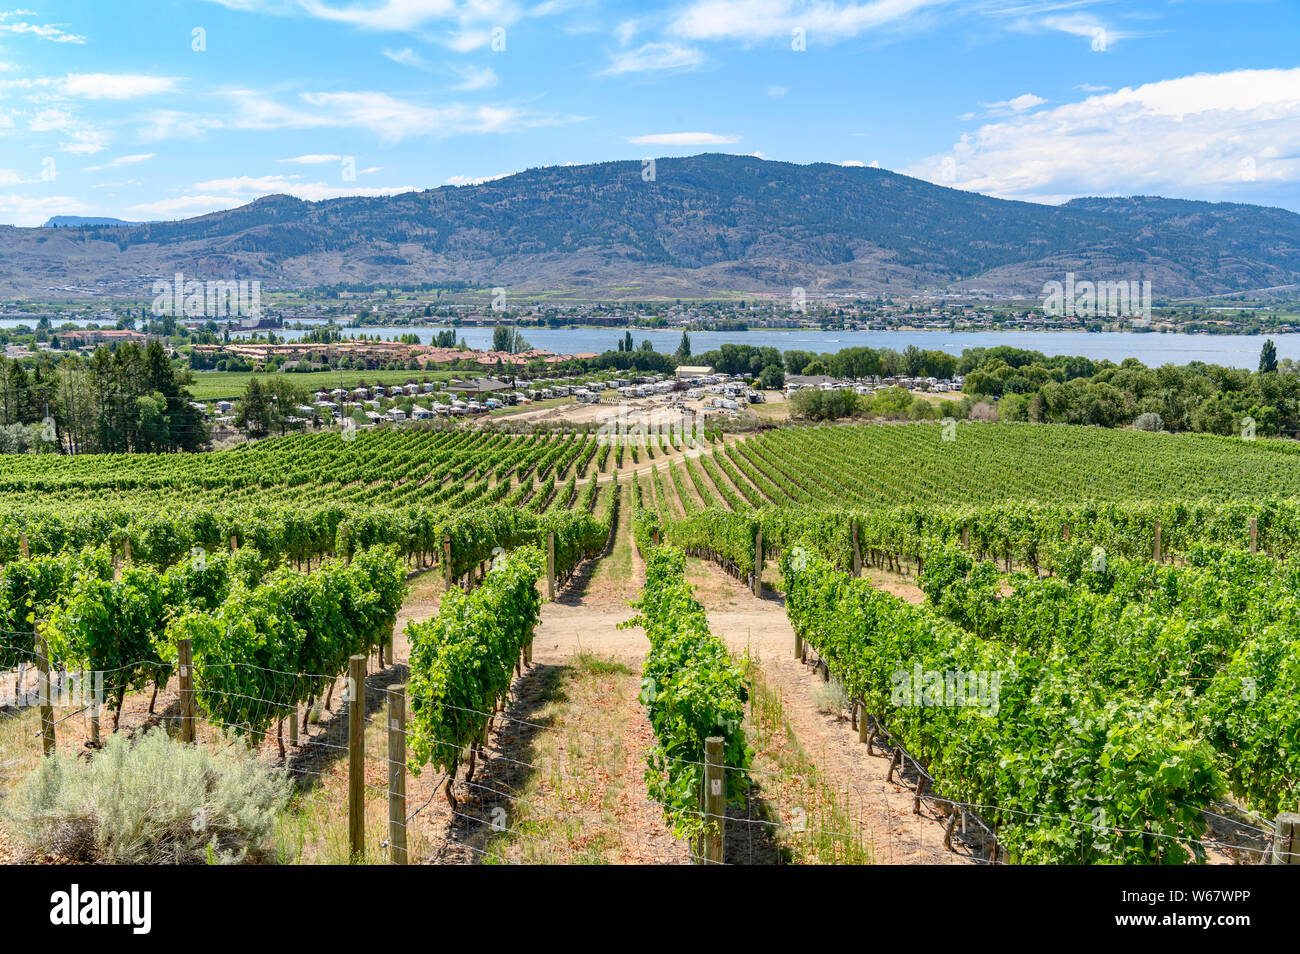 La viticulture à Osoyoos, Okanagan Valley, British Columbia, Canada Banque D'Images